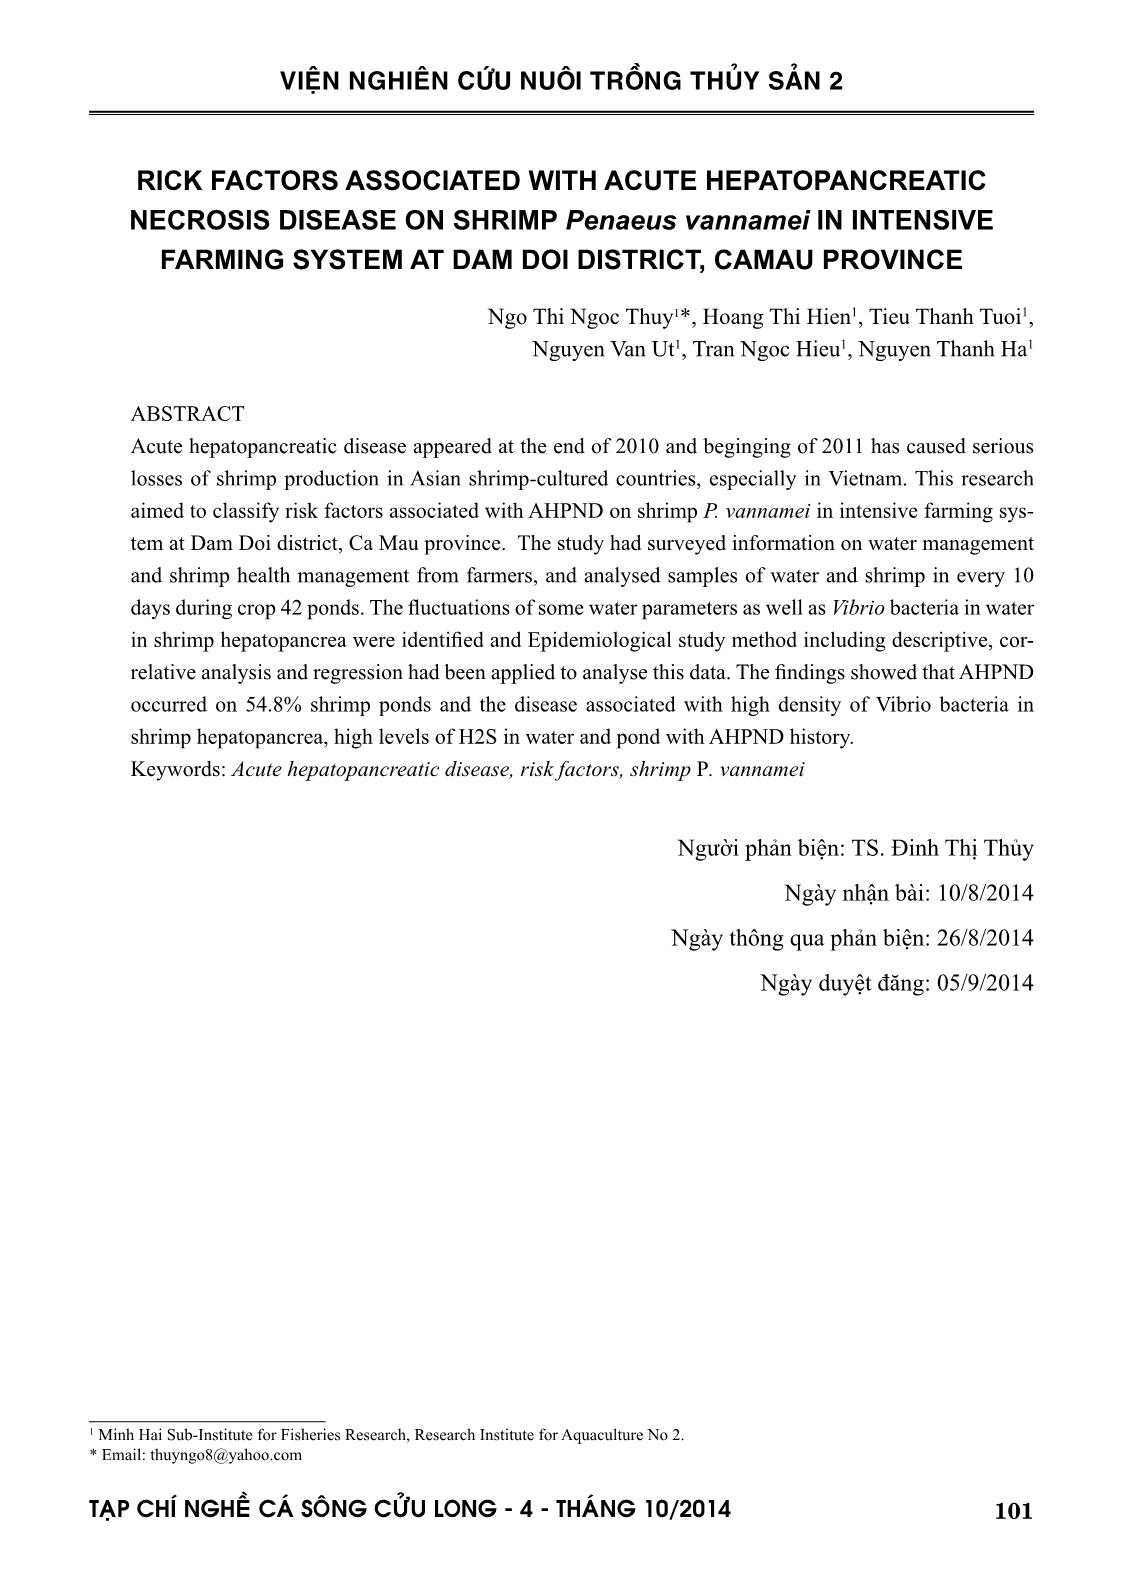 Một số yếu tố nguy cơ liên quan đến bệnh hoại tử gan tụy cấp trên tôm thẻ (Penaeus vannamei) nuôi công nghiệp quy mô nông hộ tại huyện Đầm Dơi, Cà Mau trang 10